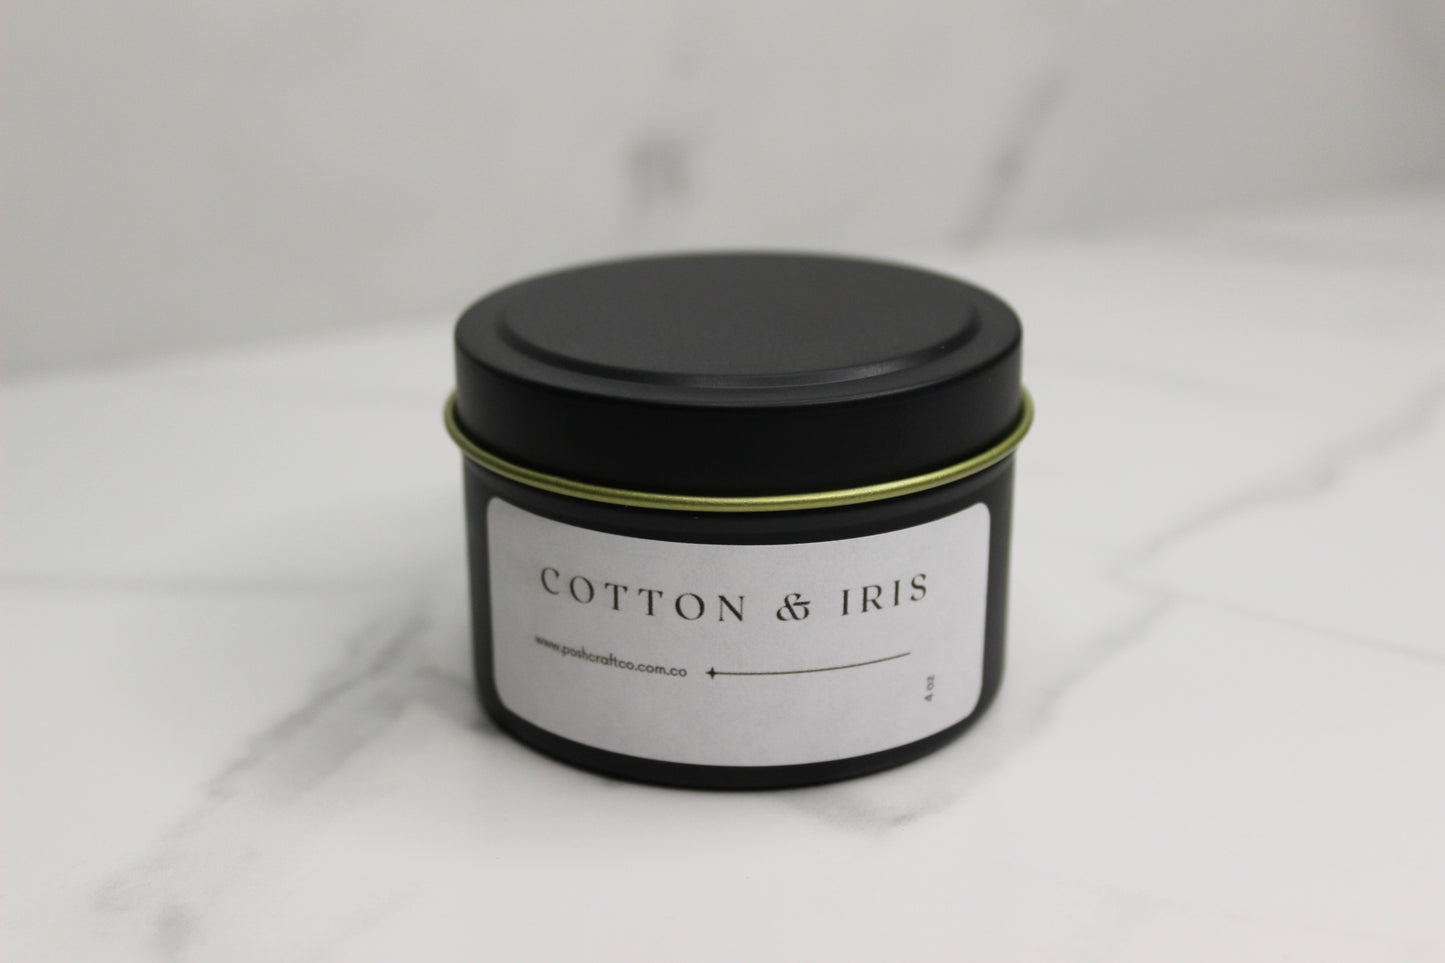 Cotton & Iris Candle. 4oz.